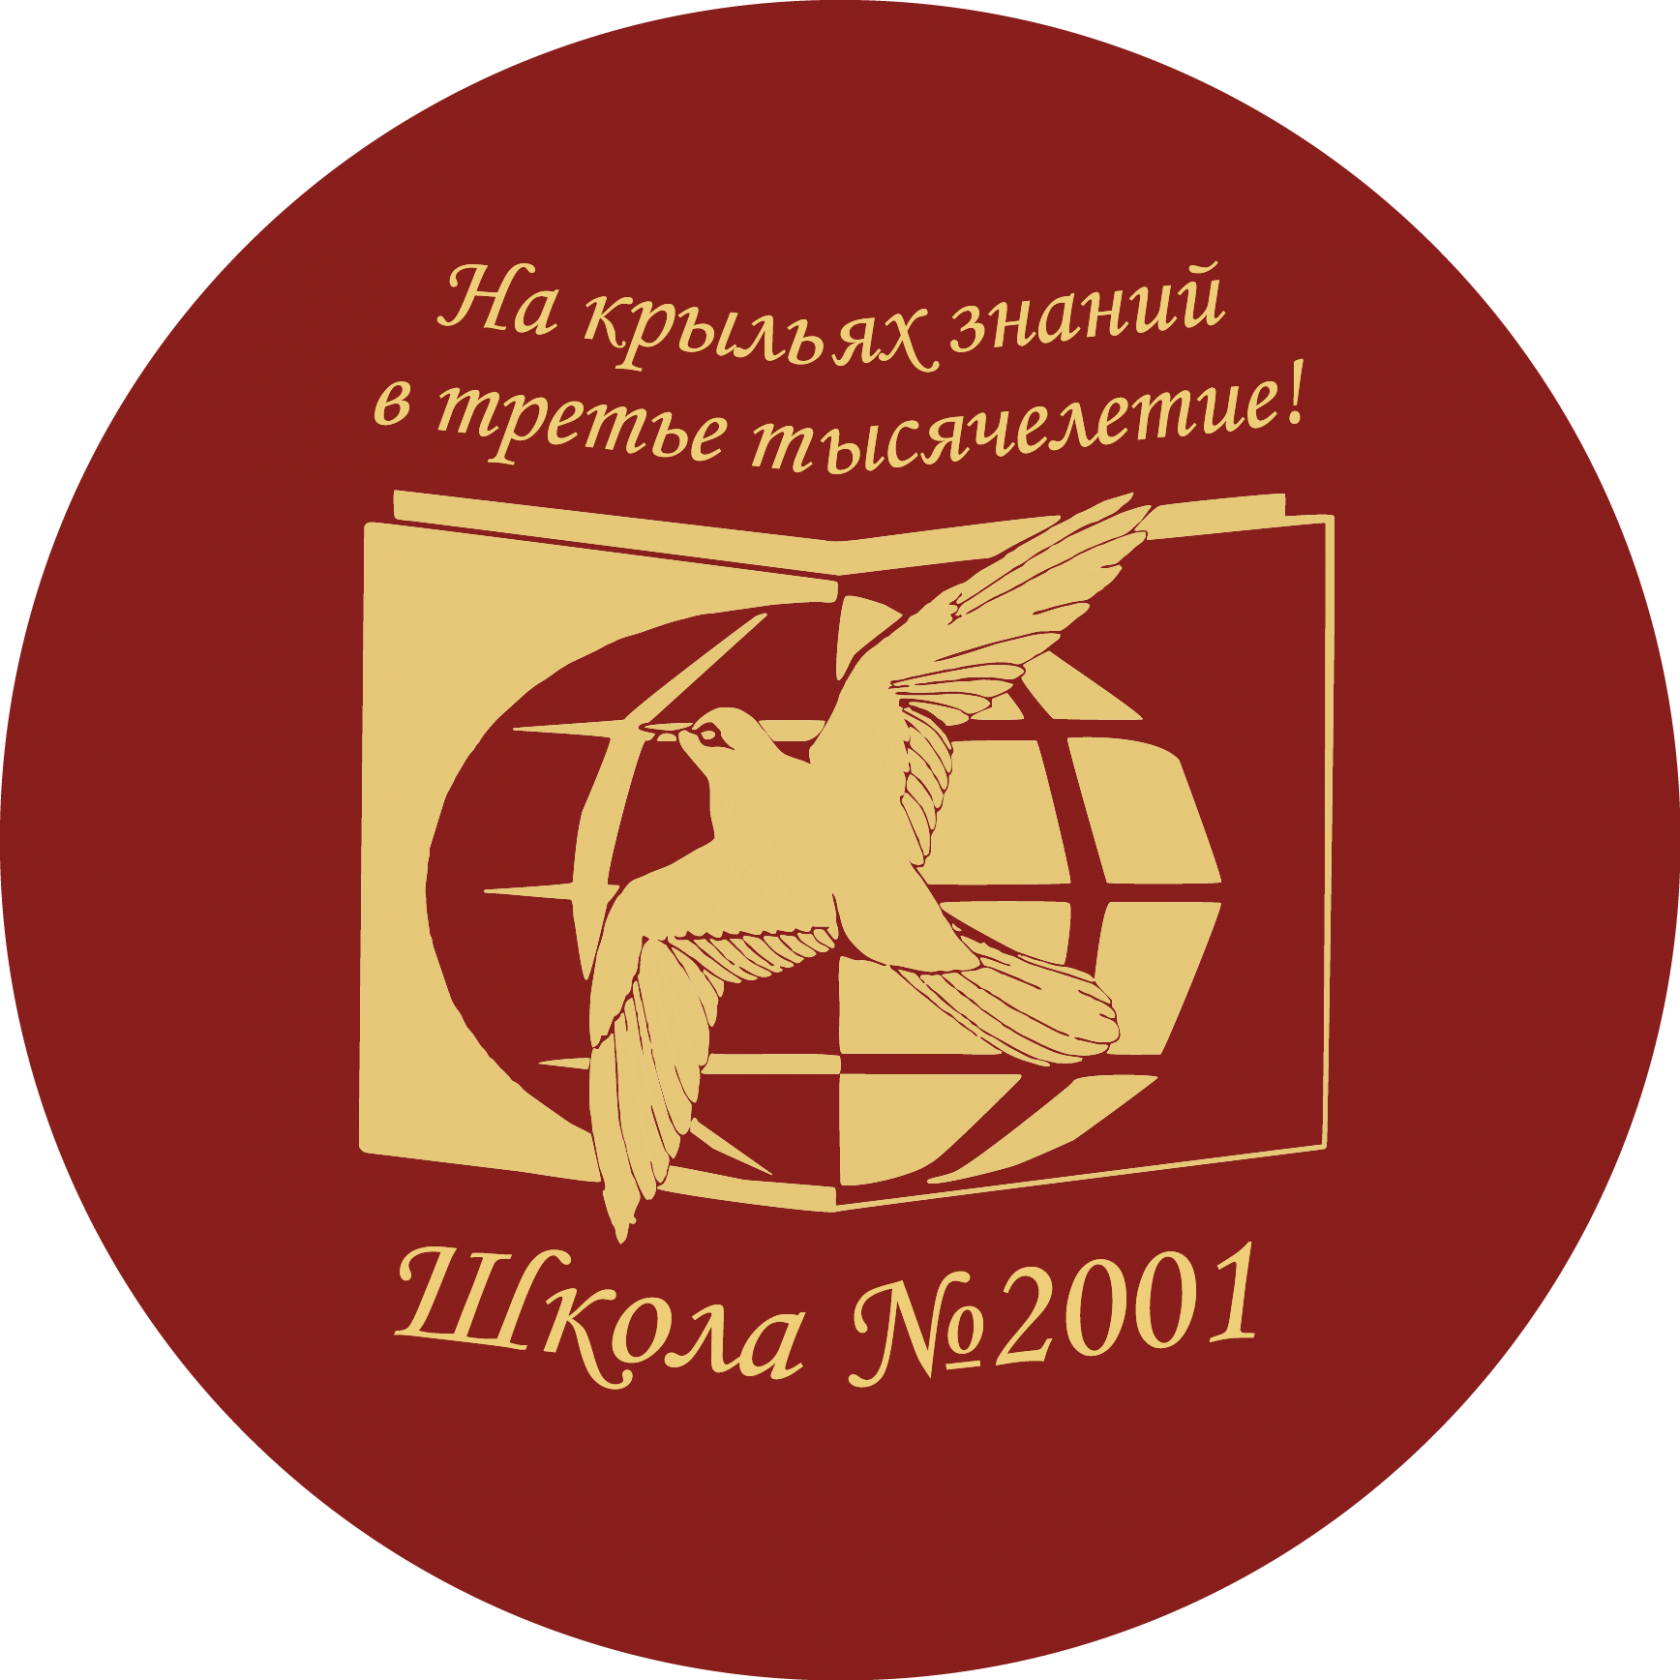 Начальная школа 2001. Школа 2001 Москва Бирюлево Западное. Школа 2001 логотип. Школа 2001 Москва. Школа 2001 Северная.